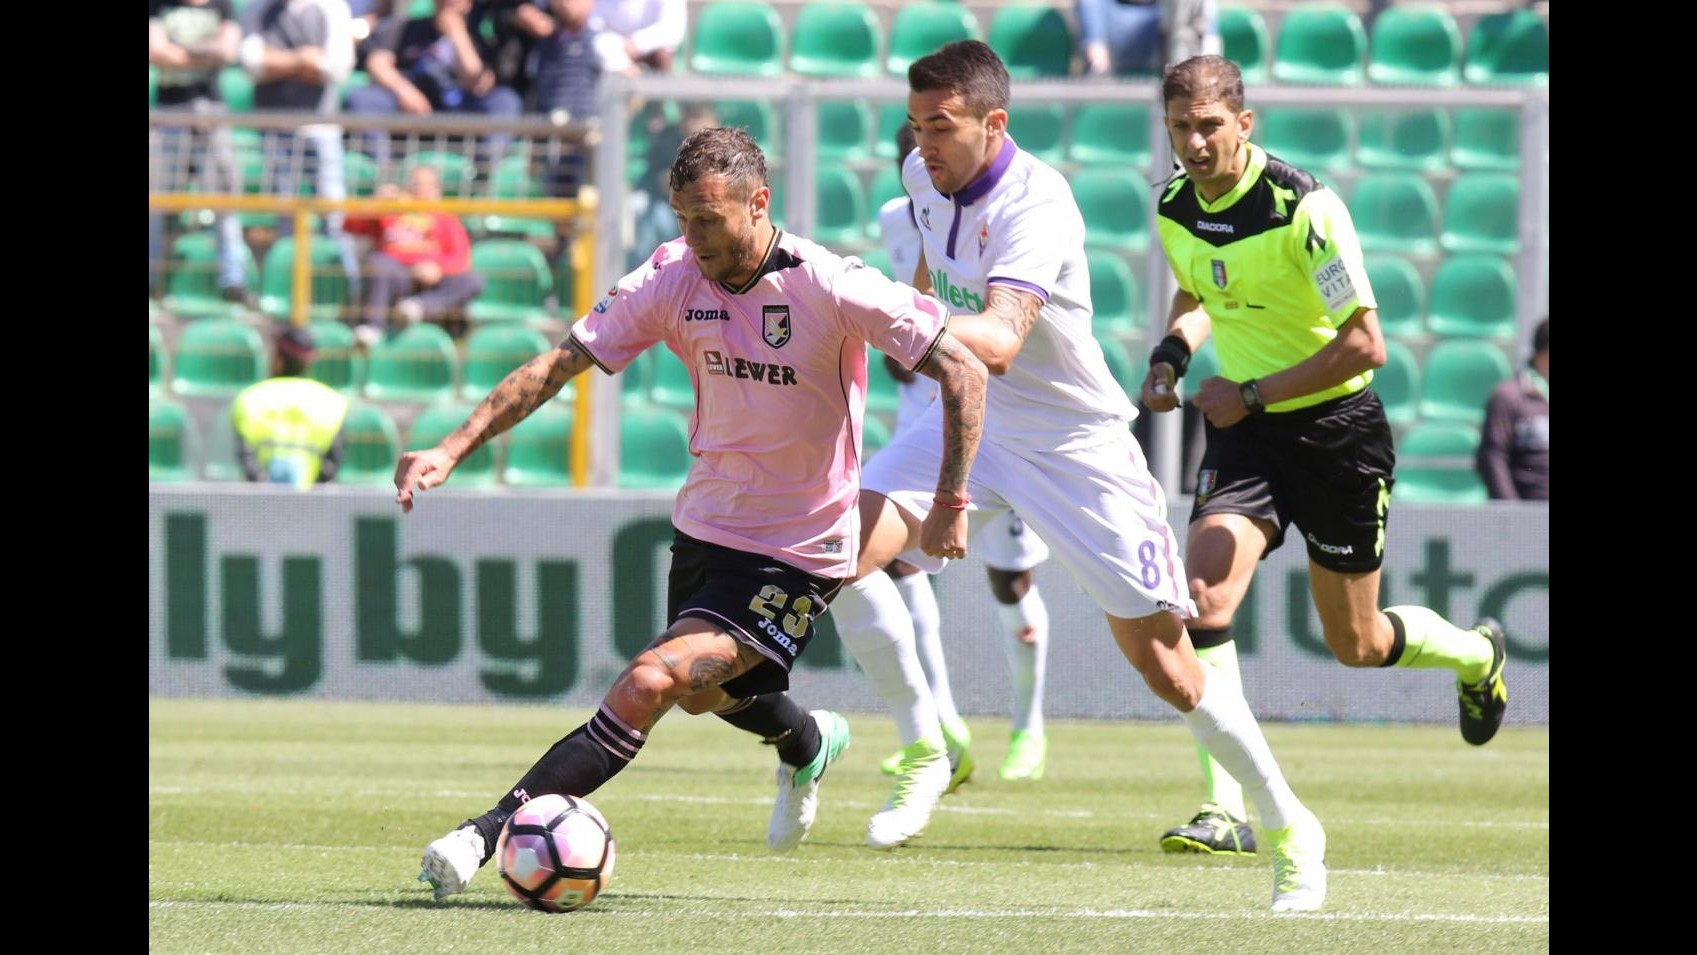 FOTO Serie A, la Fiorentina cade a Palermo: 2-0 per i rosanero